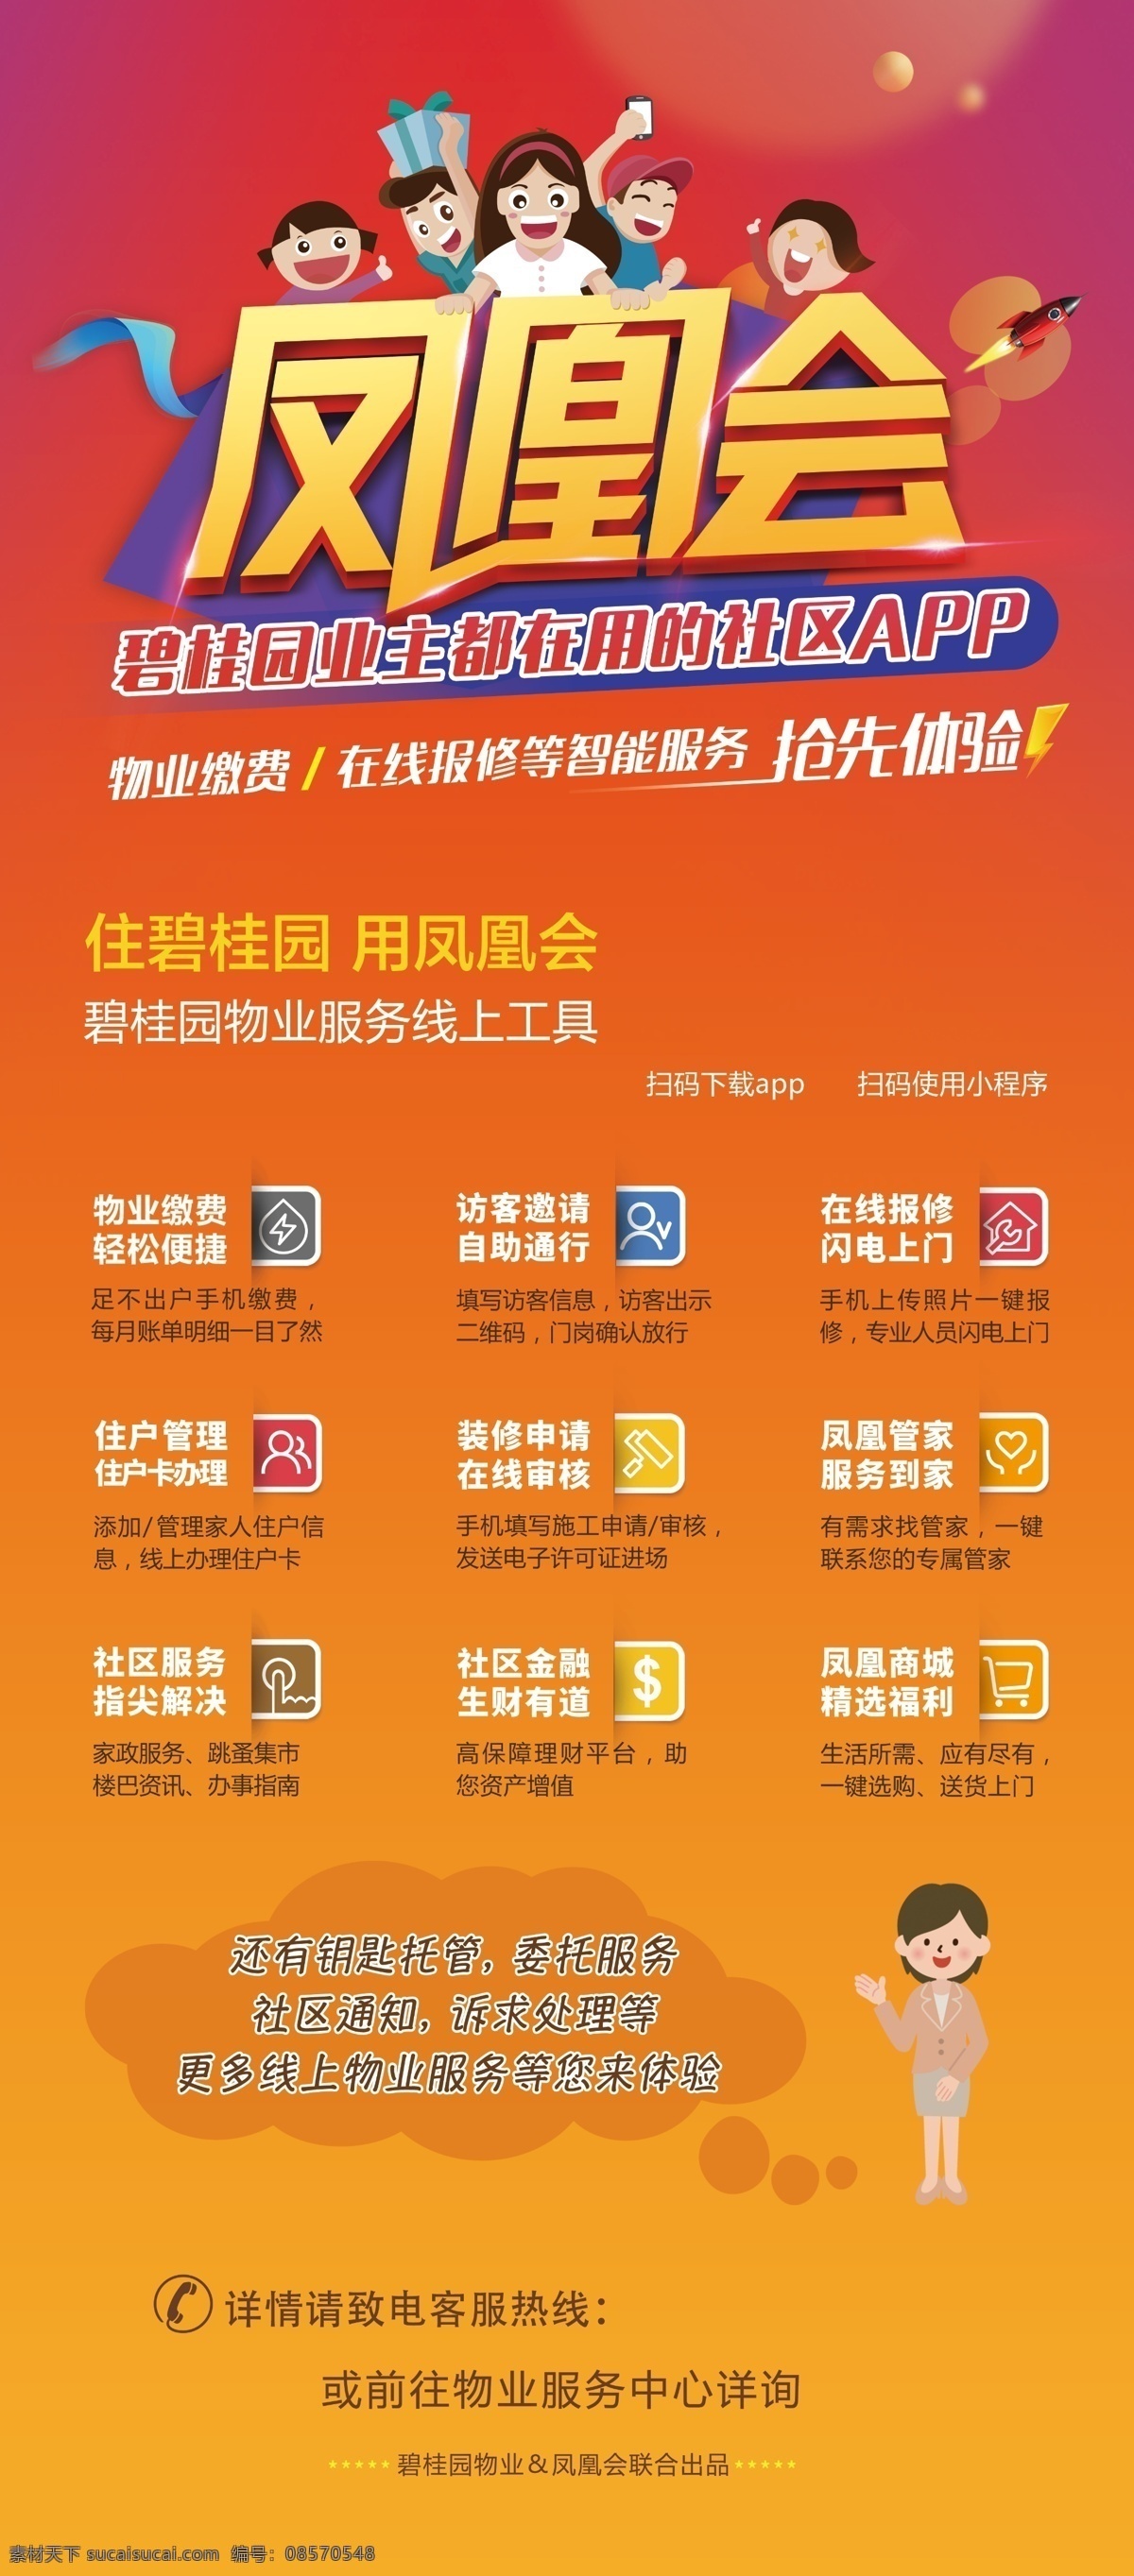 碧桂园 物业服务 社区 app 卡通 住户管理 海报 宣传海报 灯片